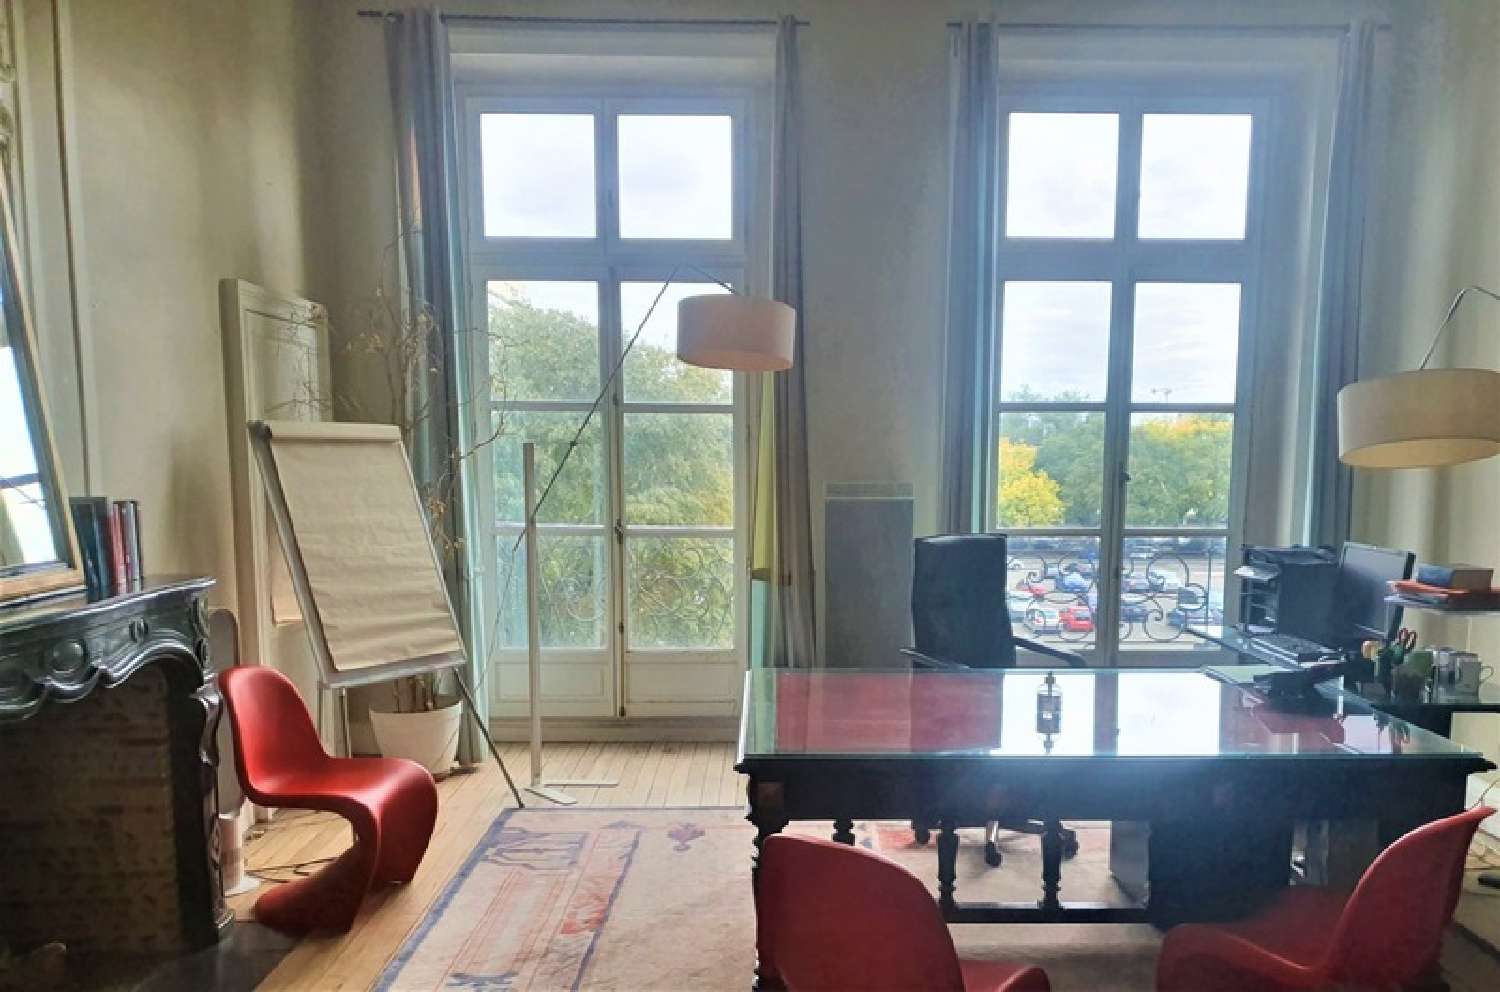  à vendre appartement Nantes Loire-Atlantique 3